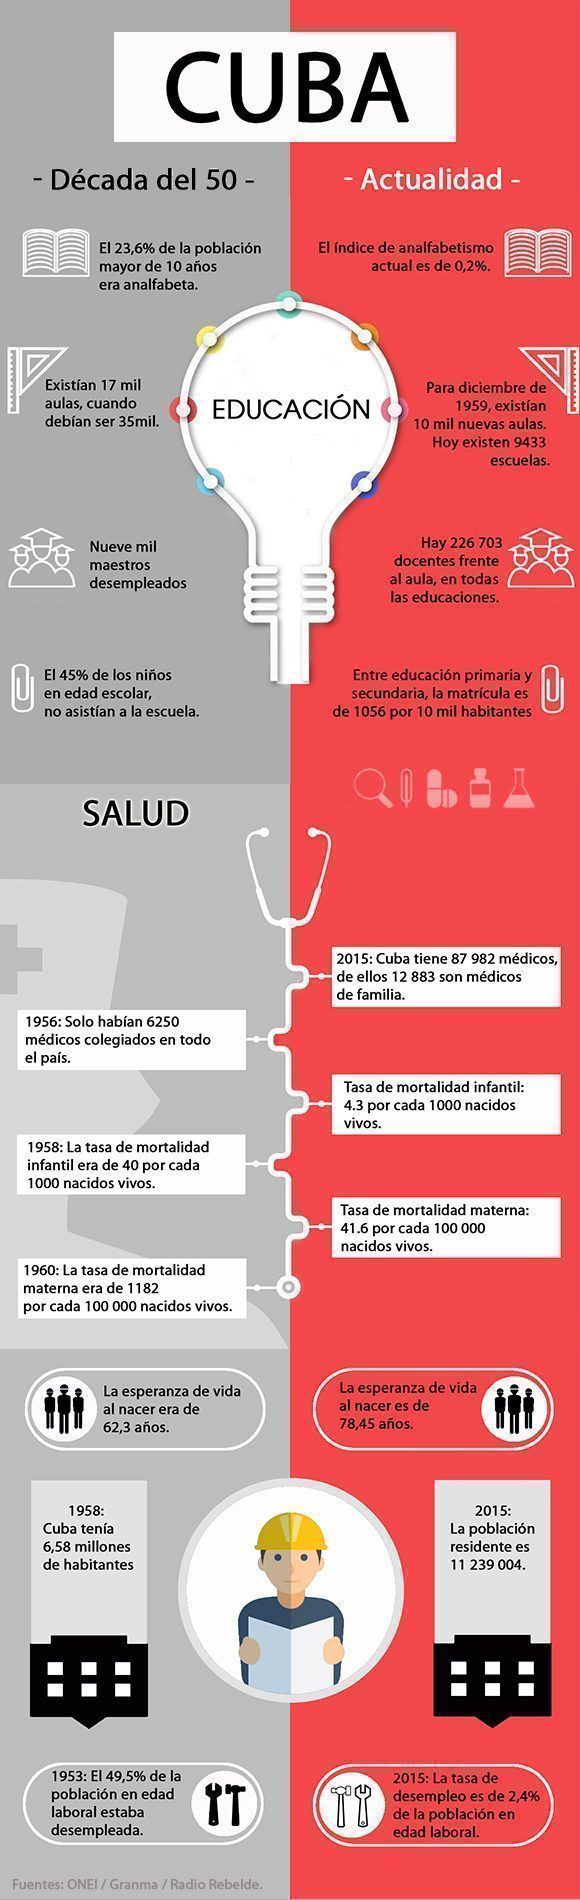 Comparación entre la Cuba de la década de 1950 y la actualidad. Infografía: Leysi Rubio/ Cubadebate. 